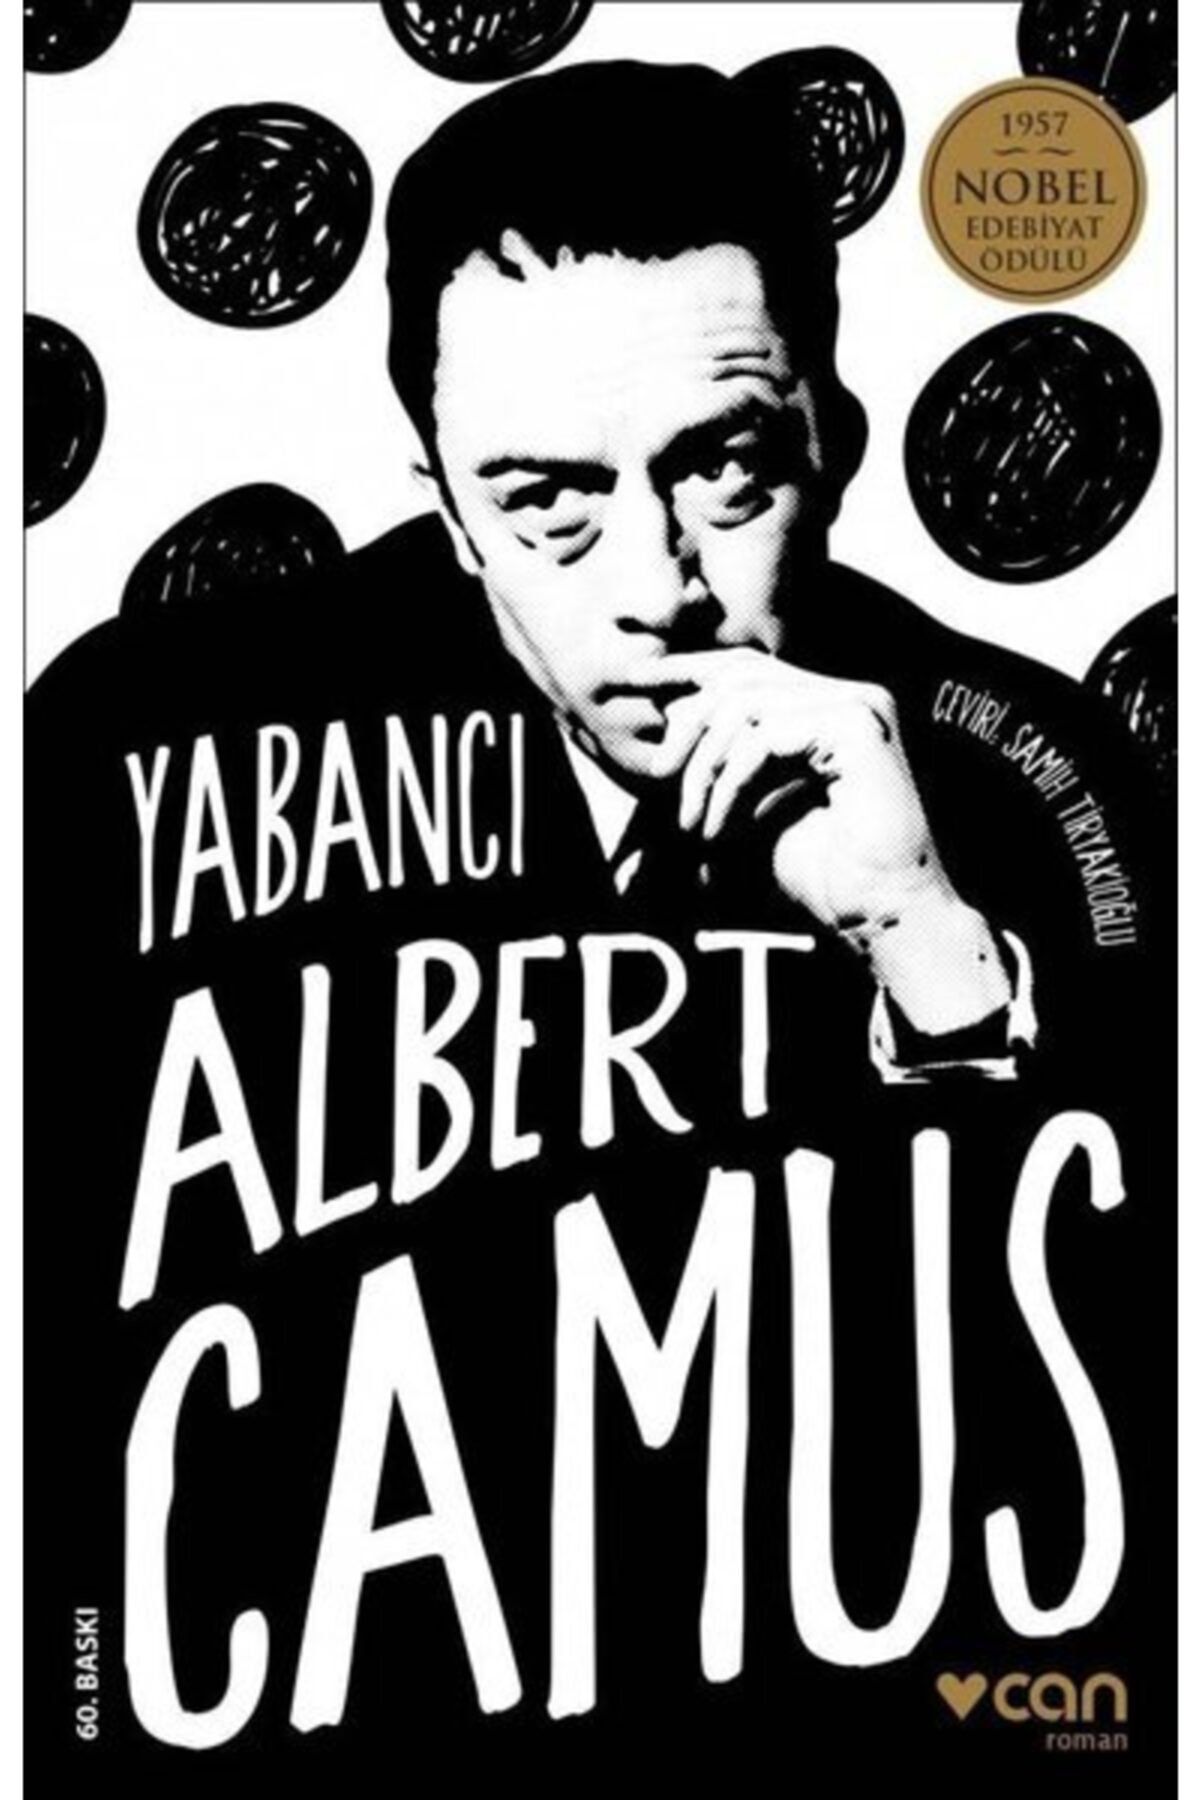 Can Yayınları Yabancı Albert Camus Can Yayınları